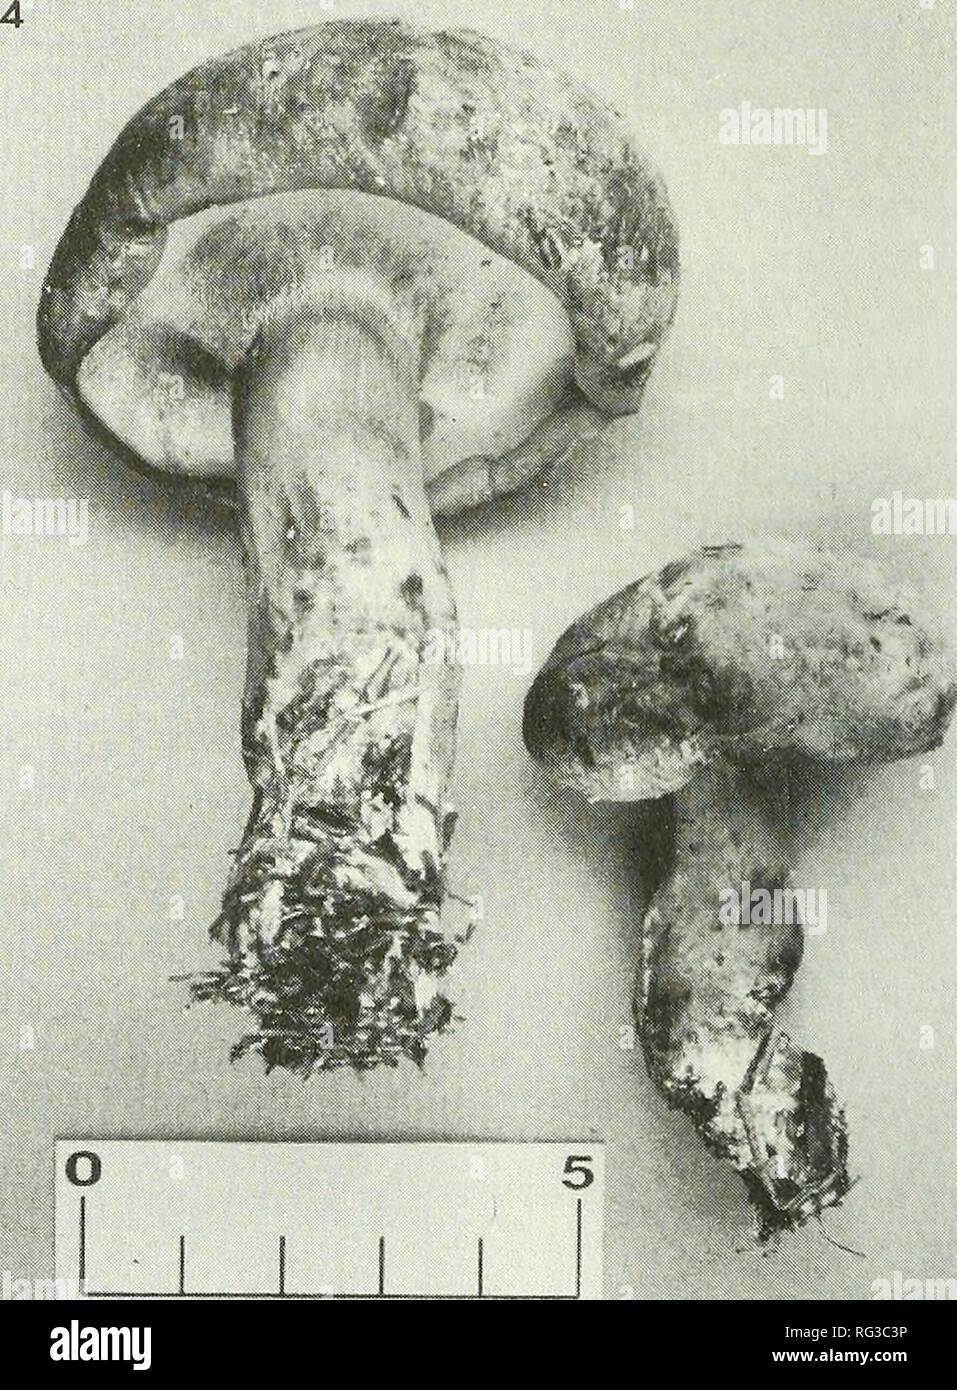 . The Canadian field-naturalist. Figure 3. Boletus huronensis (Lamoureux 1178). B. huronensis est caracterise par sa grande taille, son port robuste, son pileus brun-jaune un peu tomenteux, ses tubes jaunes bleuissant au froissement, sa chair peu changeante a la coupe et son stipe jaune. Grund et Harrison (1976) mentionnent que B. huro- nensis est une espece commune en Nouvelle-Ecosse dans les forets de coniferes et qu'il a ete identifie a tort sous le nom de B. impolitus Fries, une espece europeenne, pendant nombre d'annees. Meme si les caracteres macroscopiques de B. huronensis concor- dent  Stock Photo